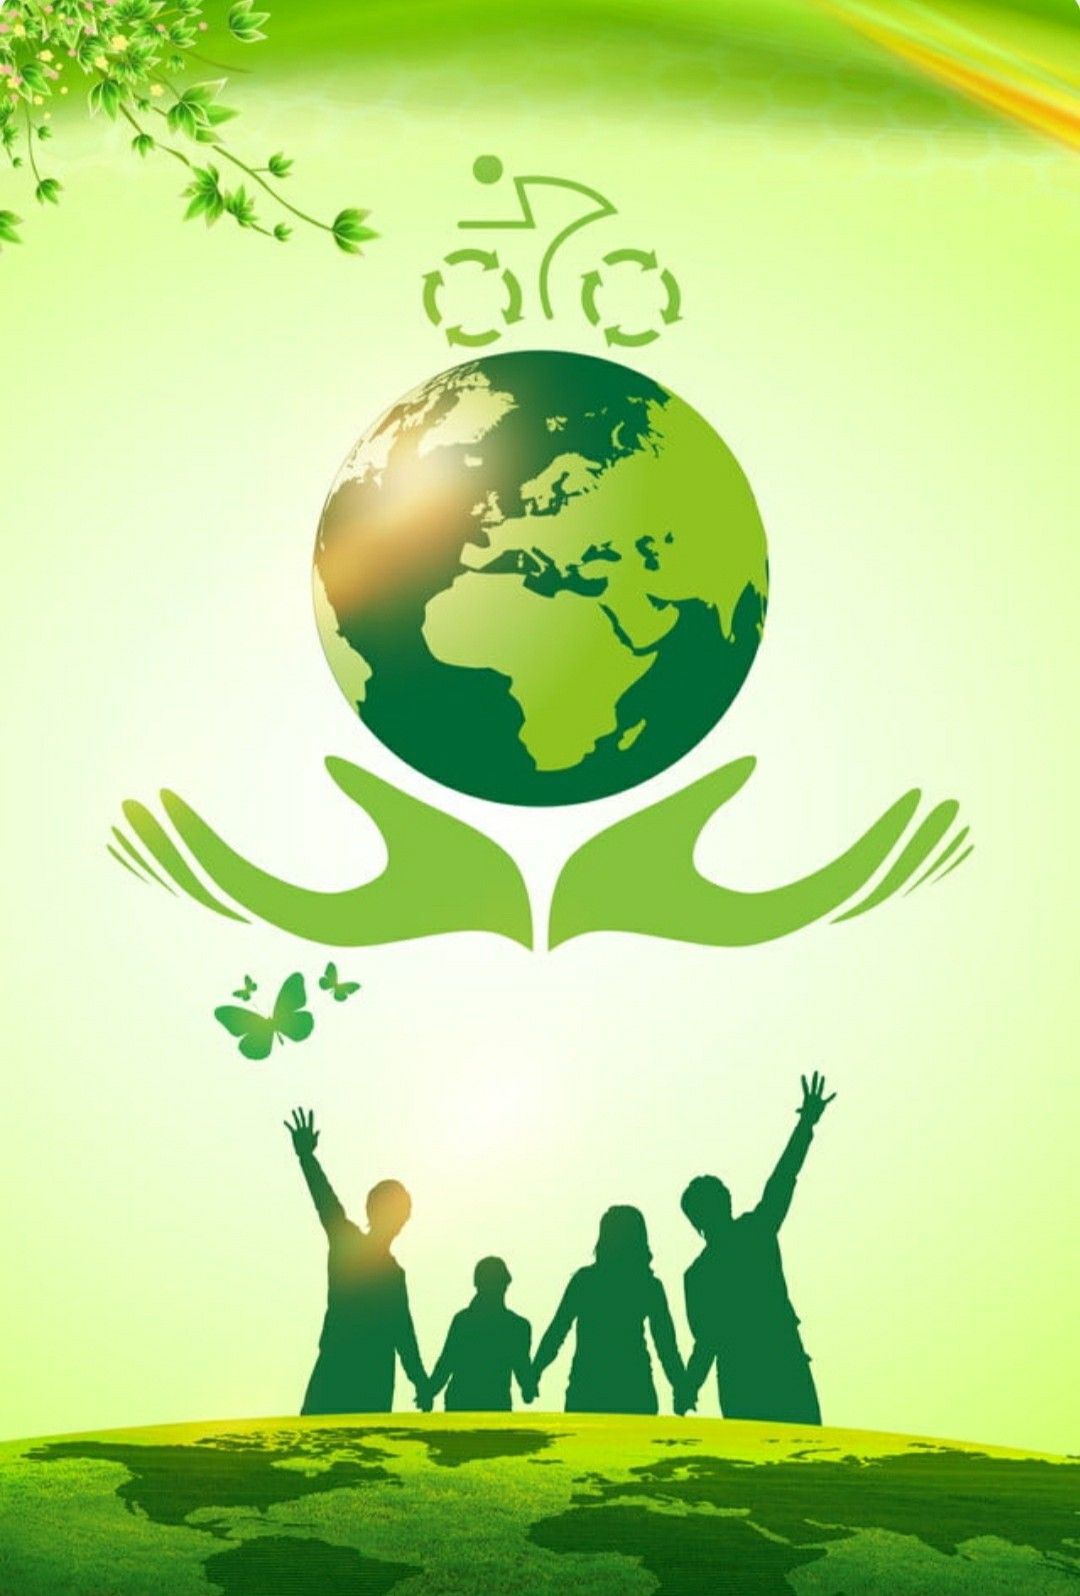 Poster bảo vệ môi trường xanh sạch